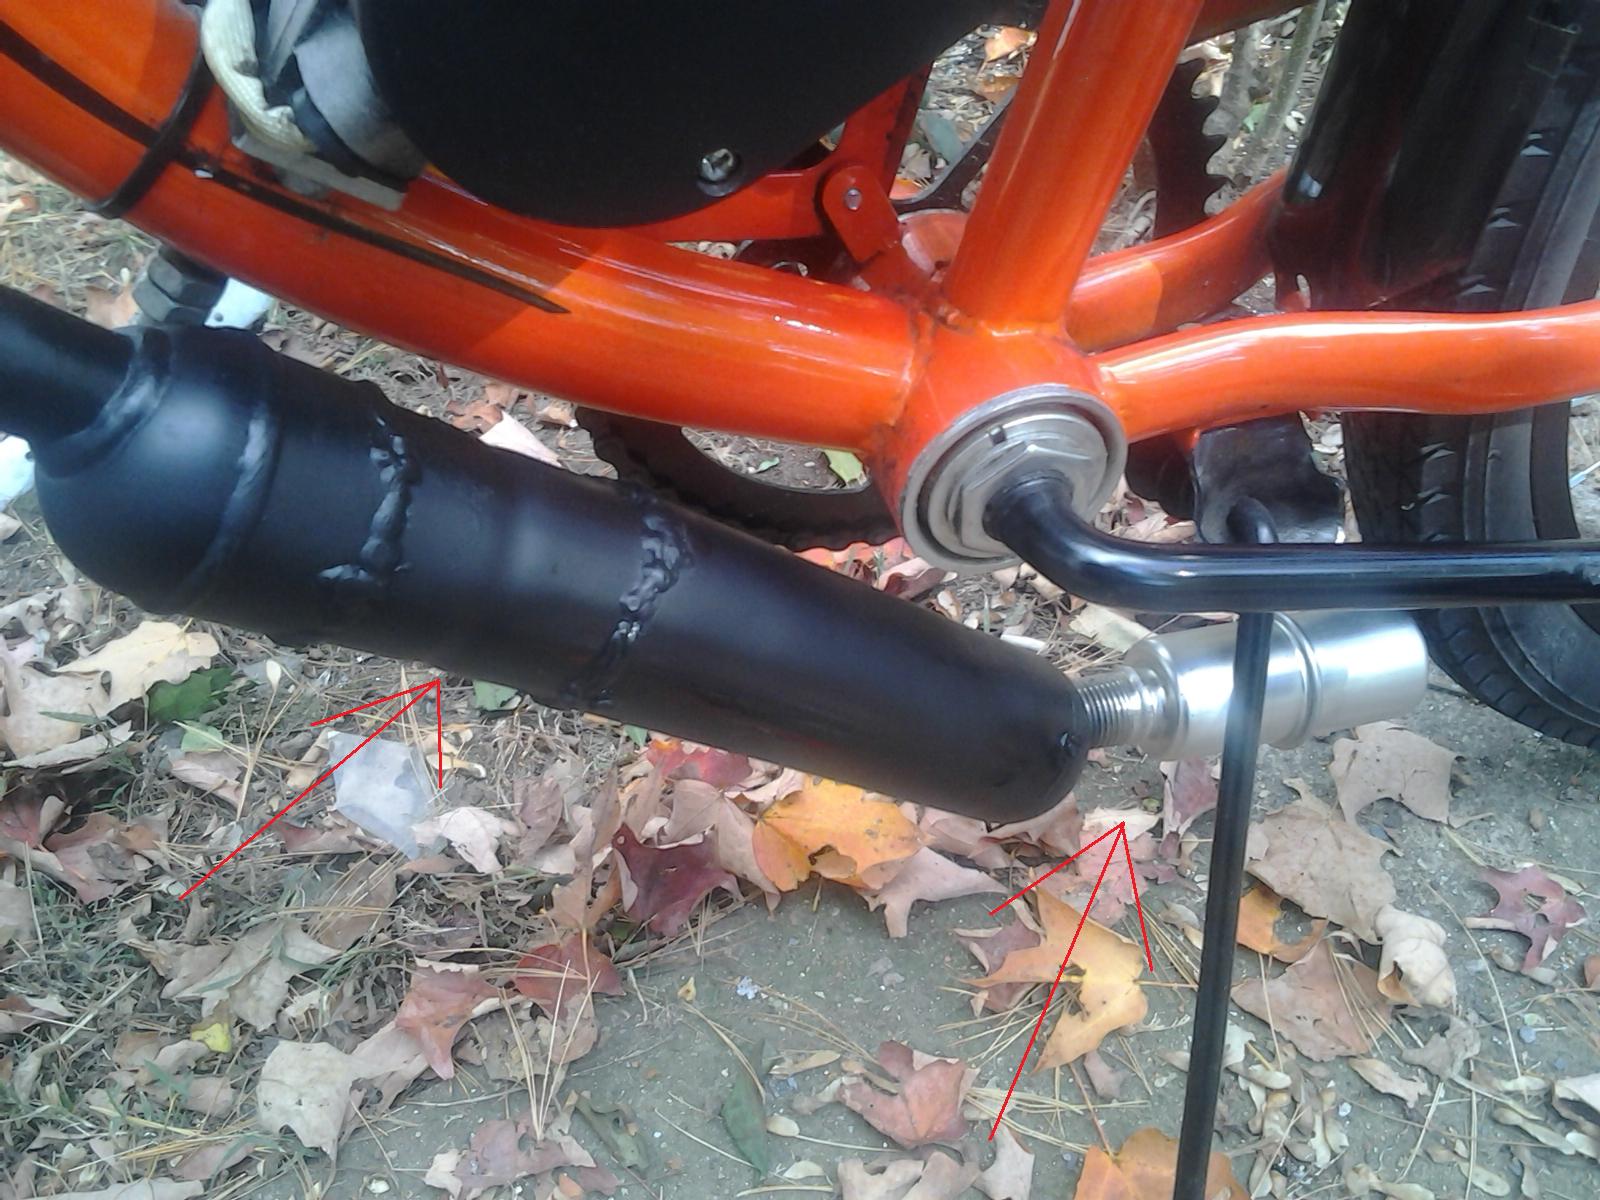 motorized bicycle upgrades